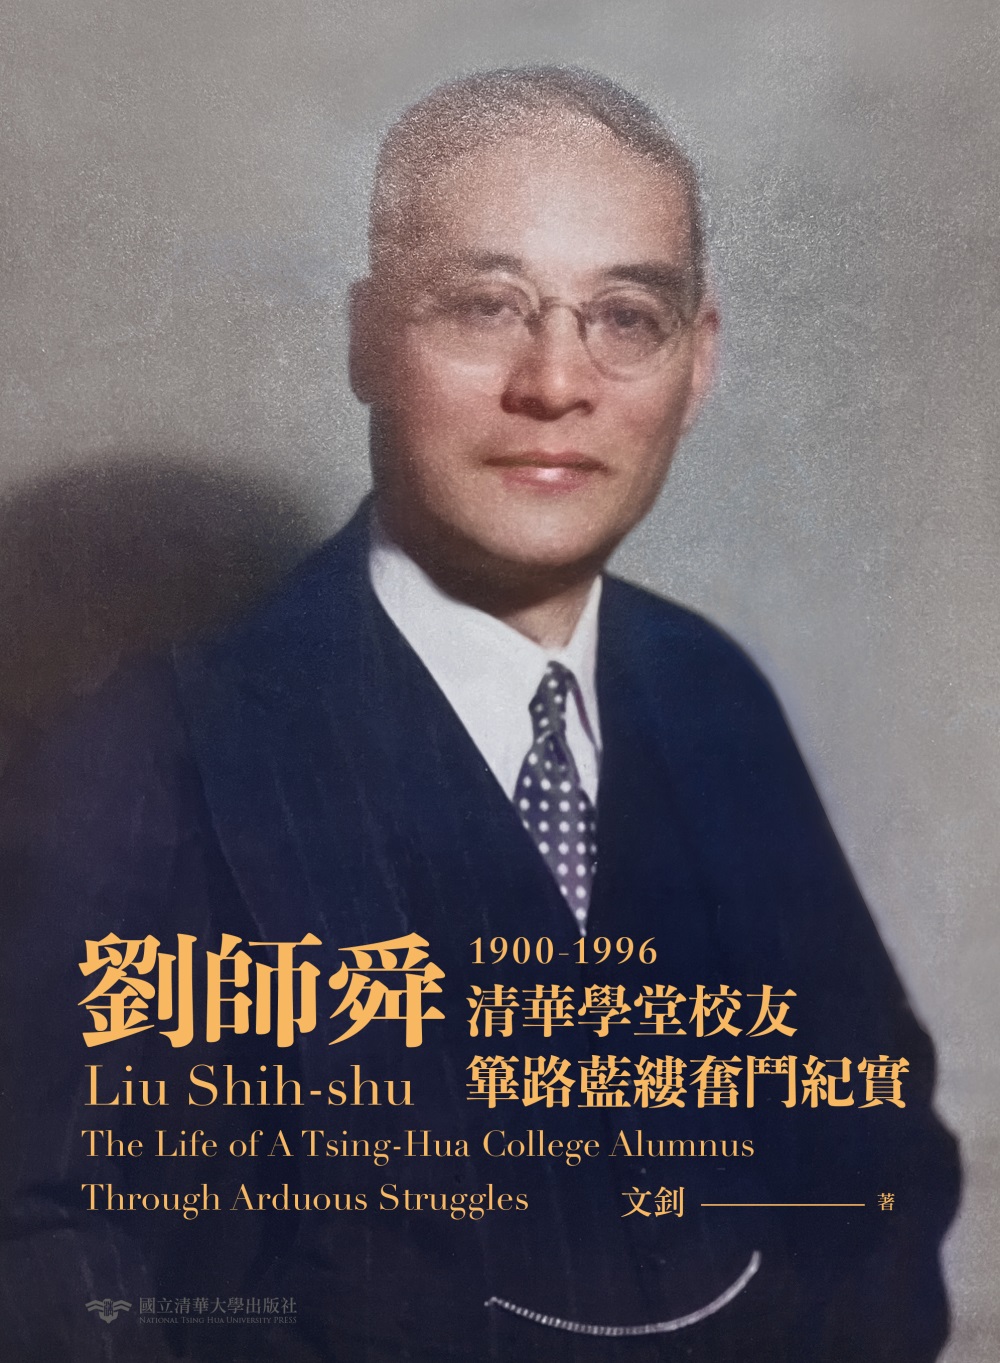 劉師舜(1900-1996)：清華學堂校友篳路藍縷奮鬥紀實